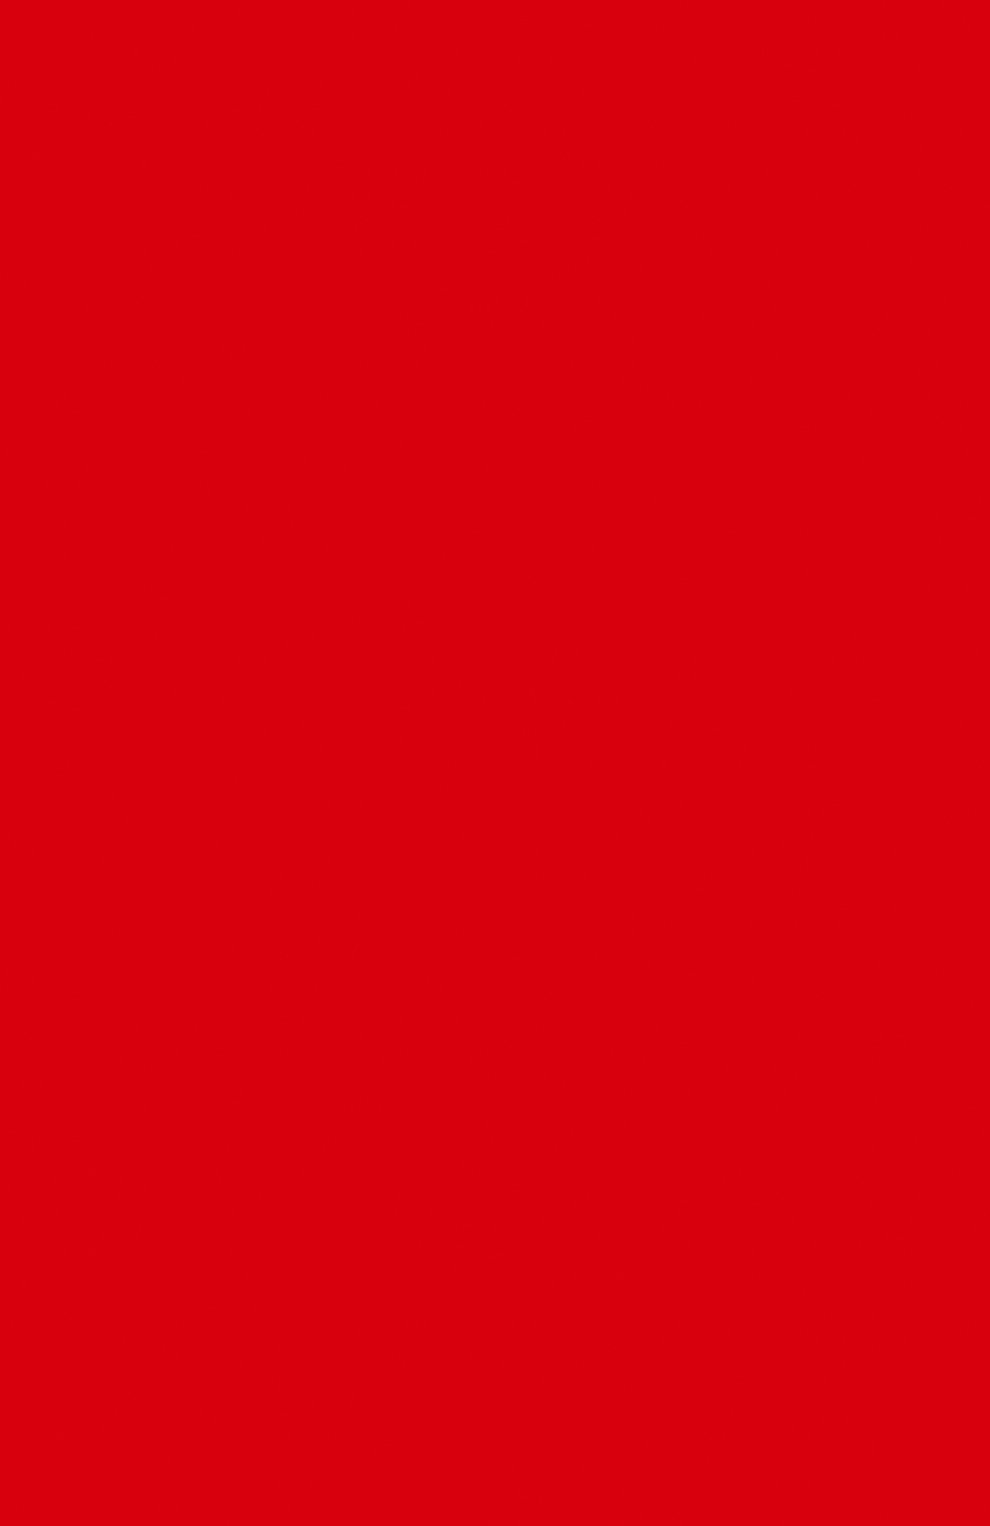 Жидкая матовая помада rouge immortel (3ml) KILIAN  цвета, арт. 3700550221890 | Фото 3 (Обьем косметики: 100ml; Финишное покрытие: Матовый)